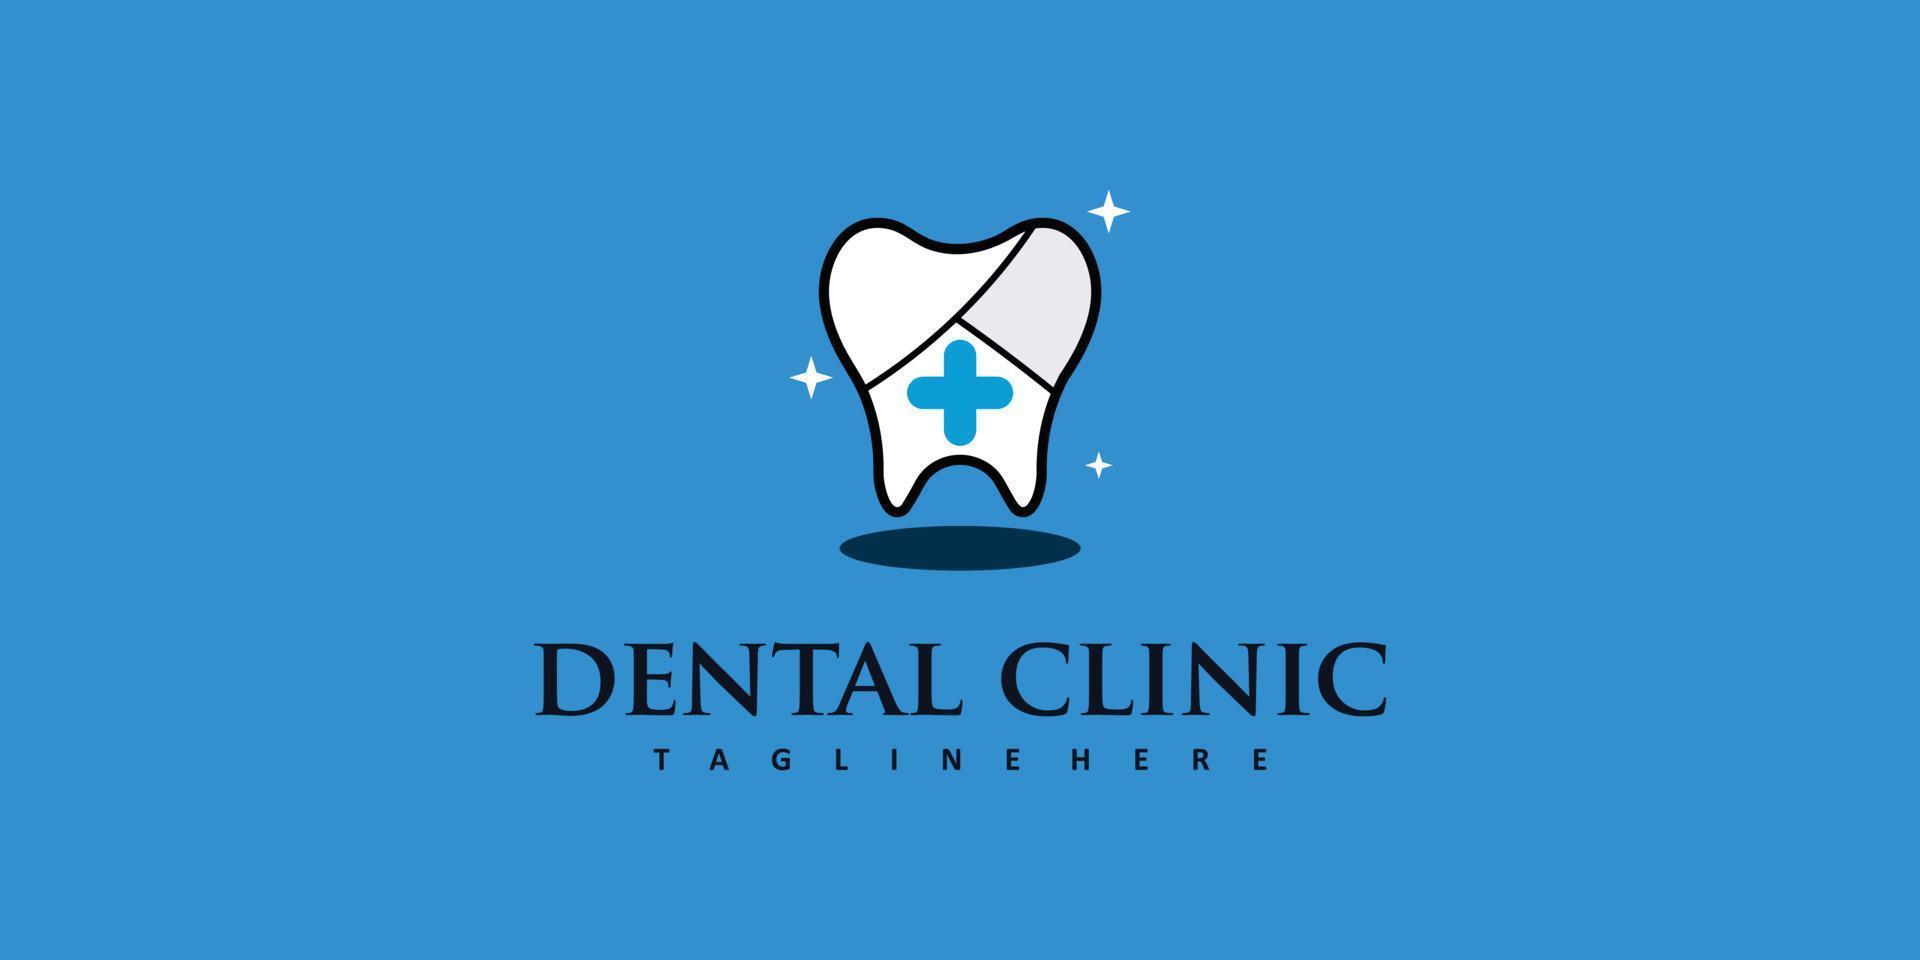 conceito de logotipo dental com vetor premium de estilo único e criativo